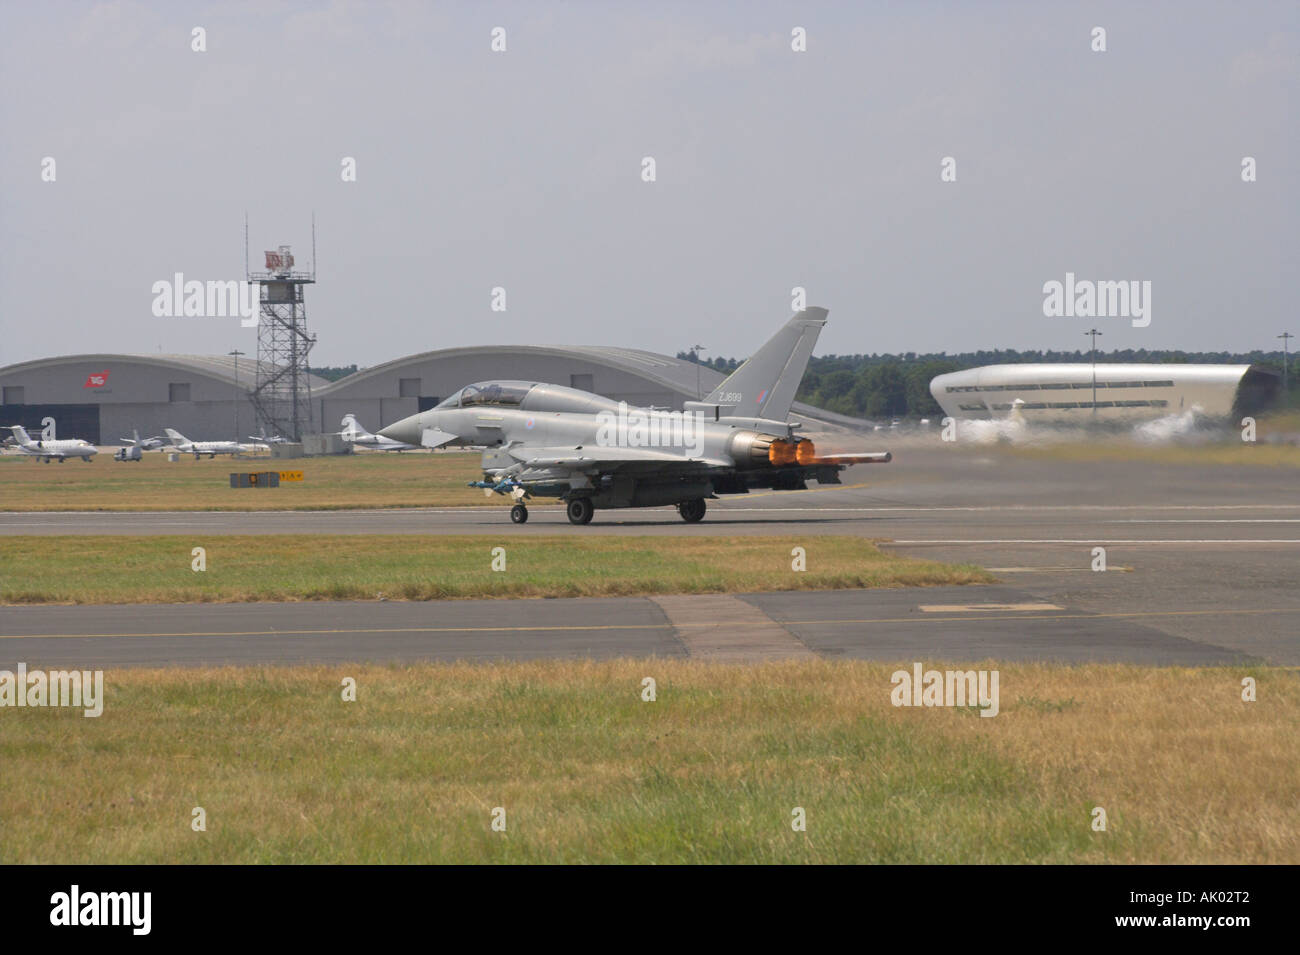 RAF Typhoon taking off run on full reheat Stock Photo